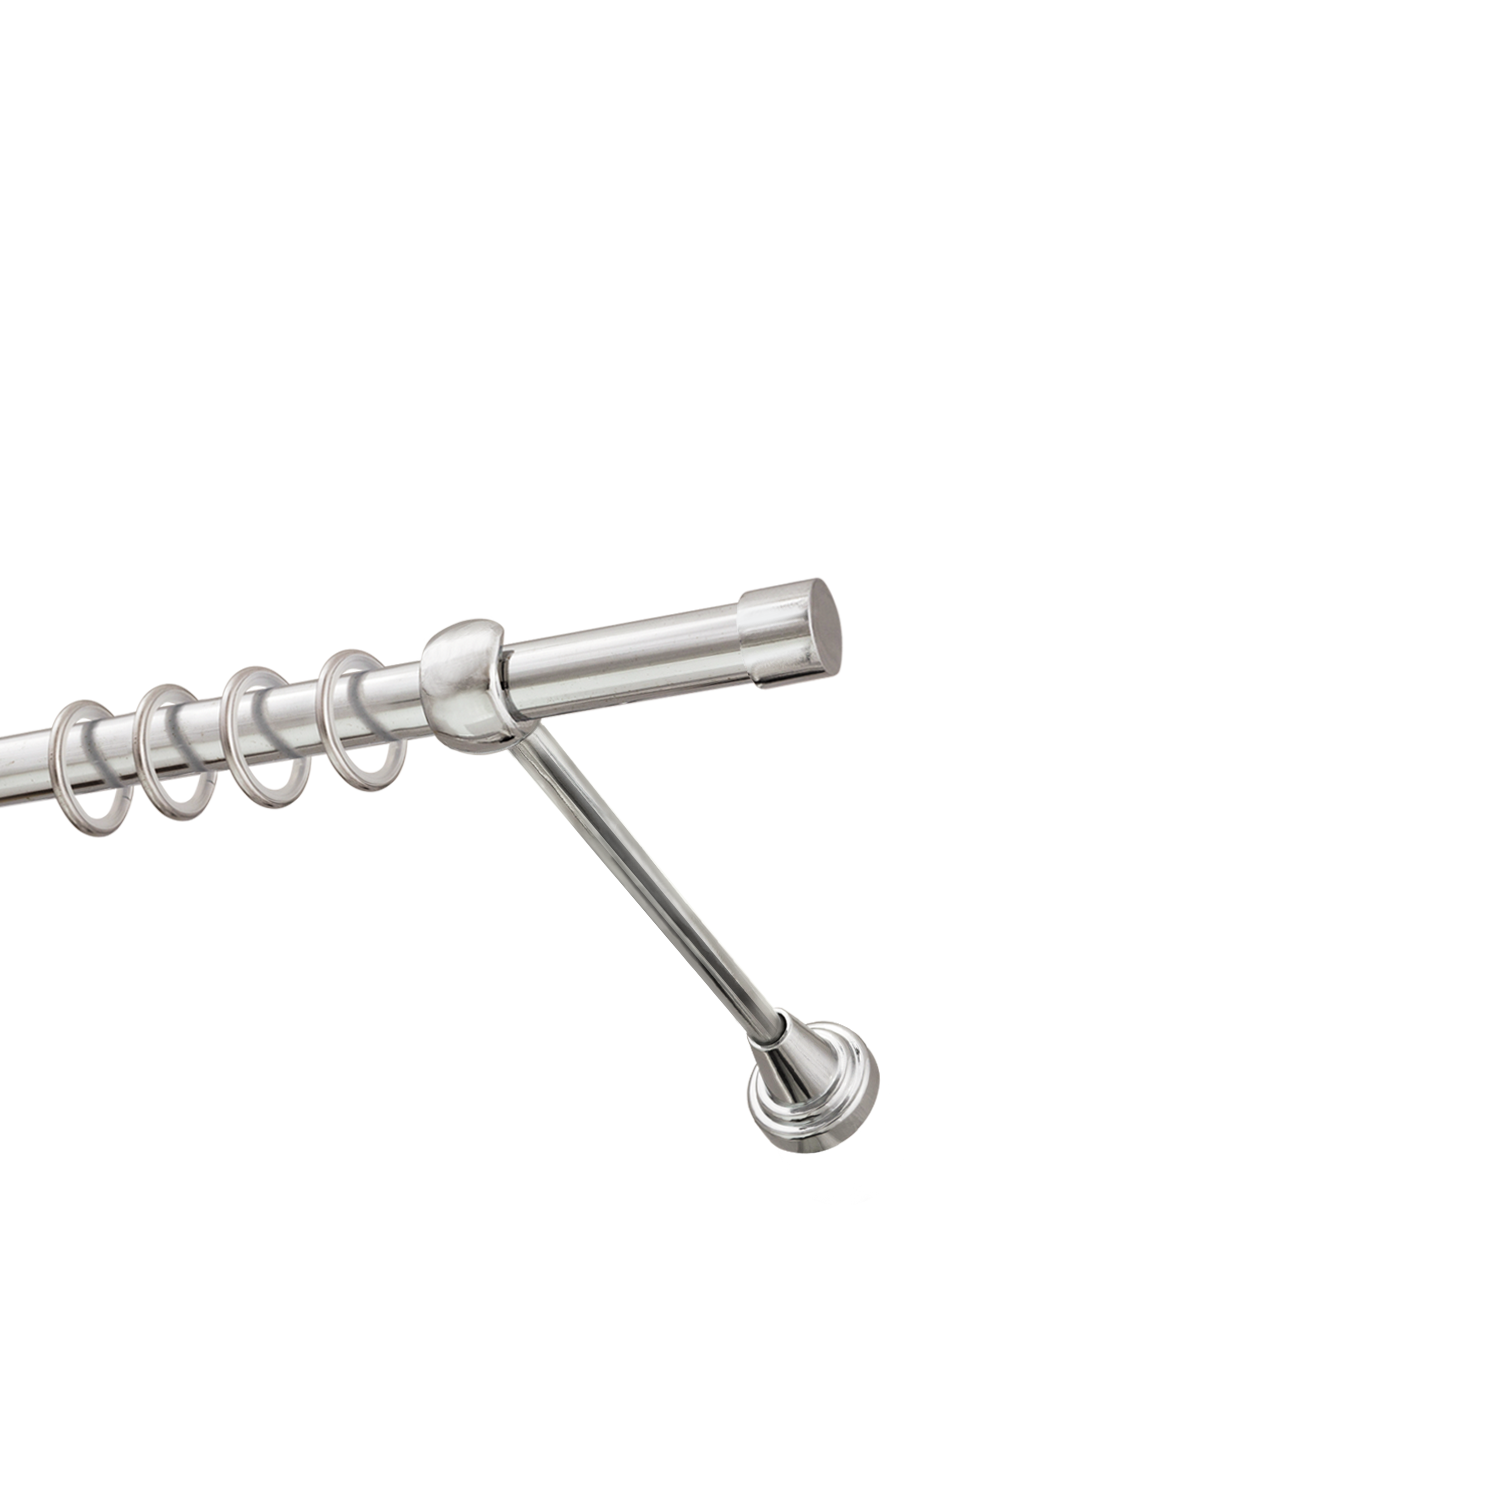 Металлический карниз для штор Заглушка, однорядный 16 мм, серебро, гладкая штанга, длина 140 см - фото Wikidecor.ru